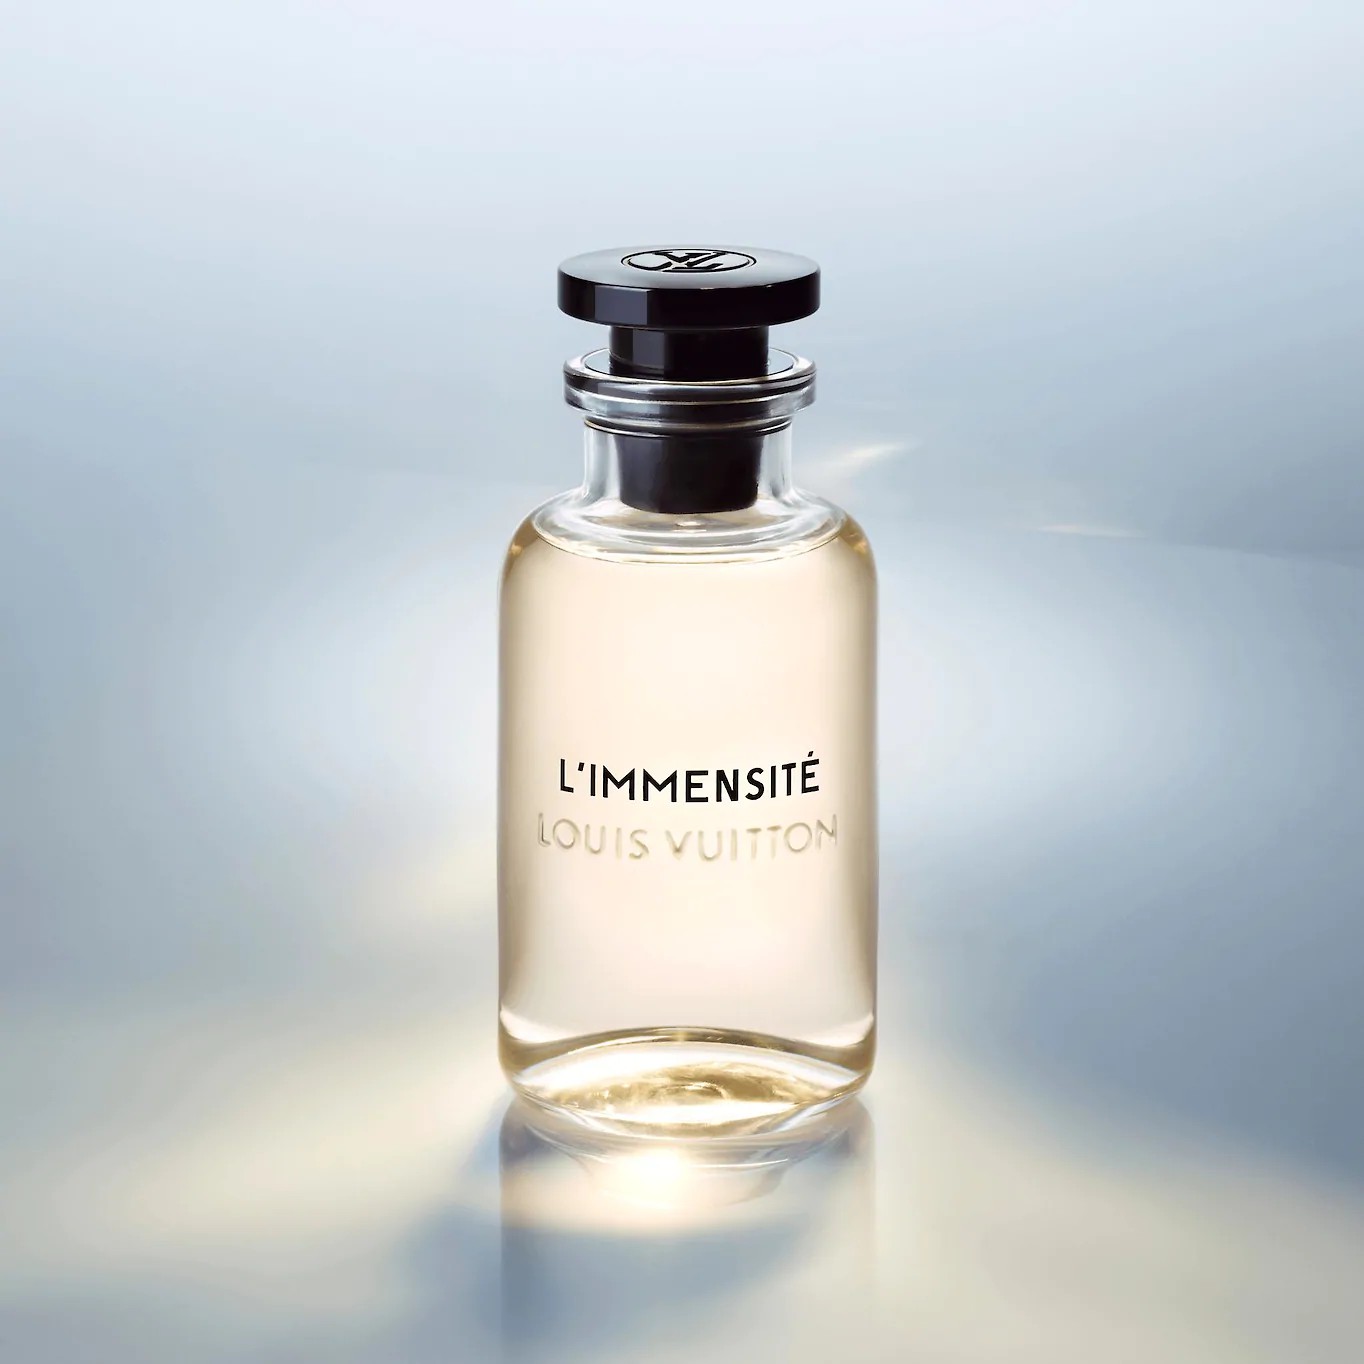 路易威登 无限 Louis Vuitton Immensité|香水评论|香调|价格|味道|香评|评价|-香水时代NoseTime.com